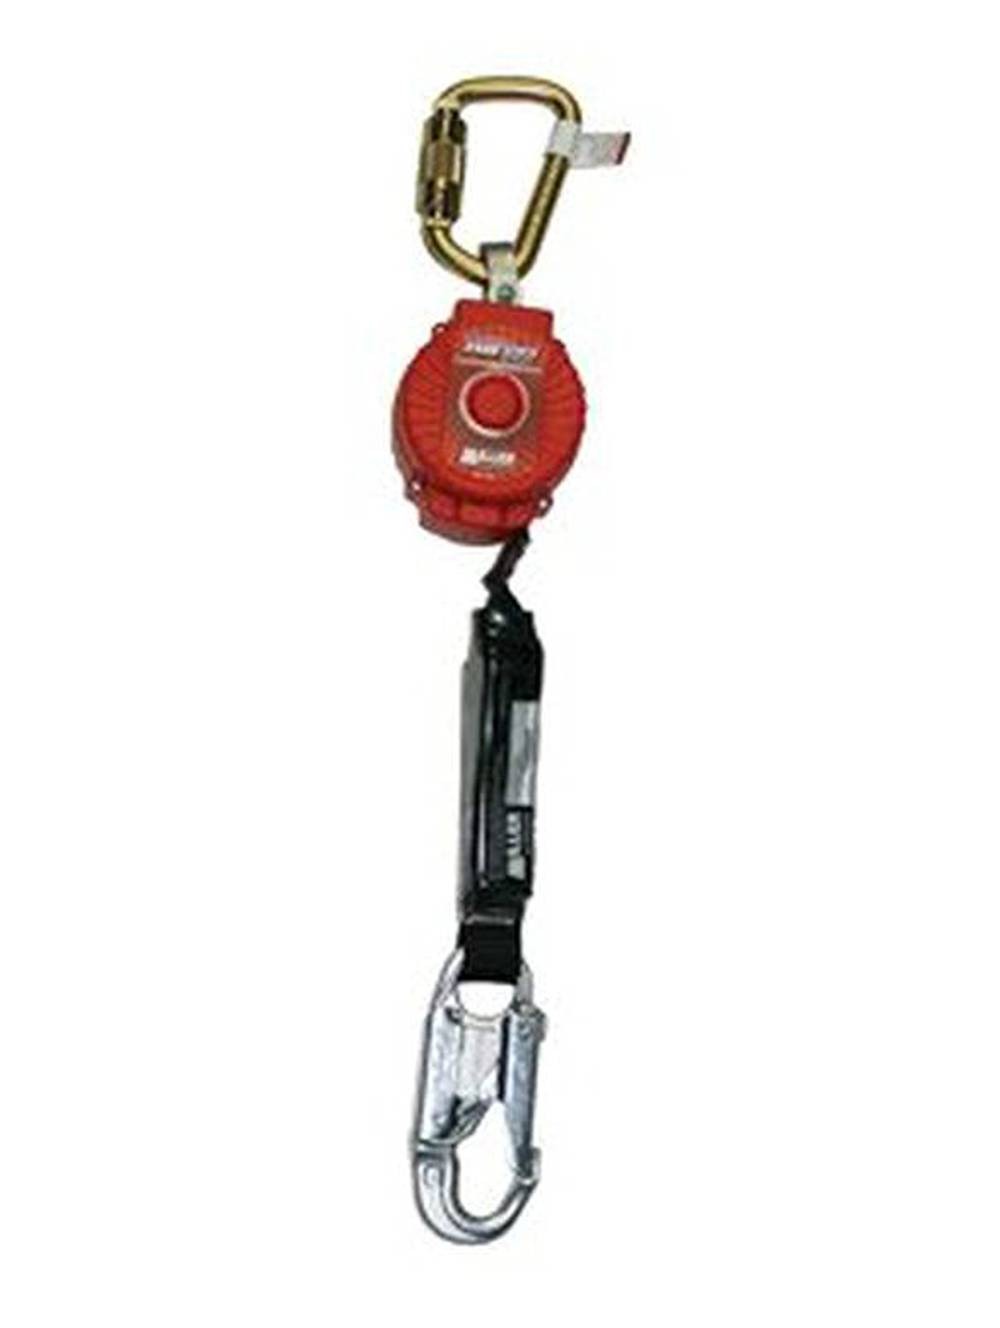 Mousqueton, mini mousqueton de 6 cm avec fermeture à vis, porte-clés  mousqueton, 6